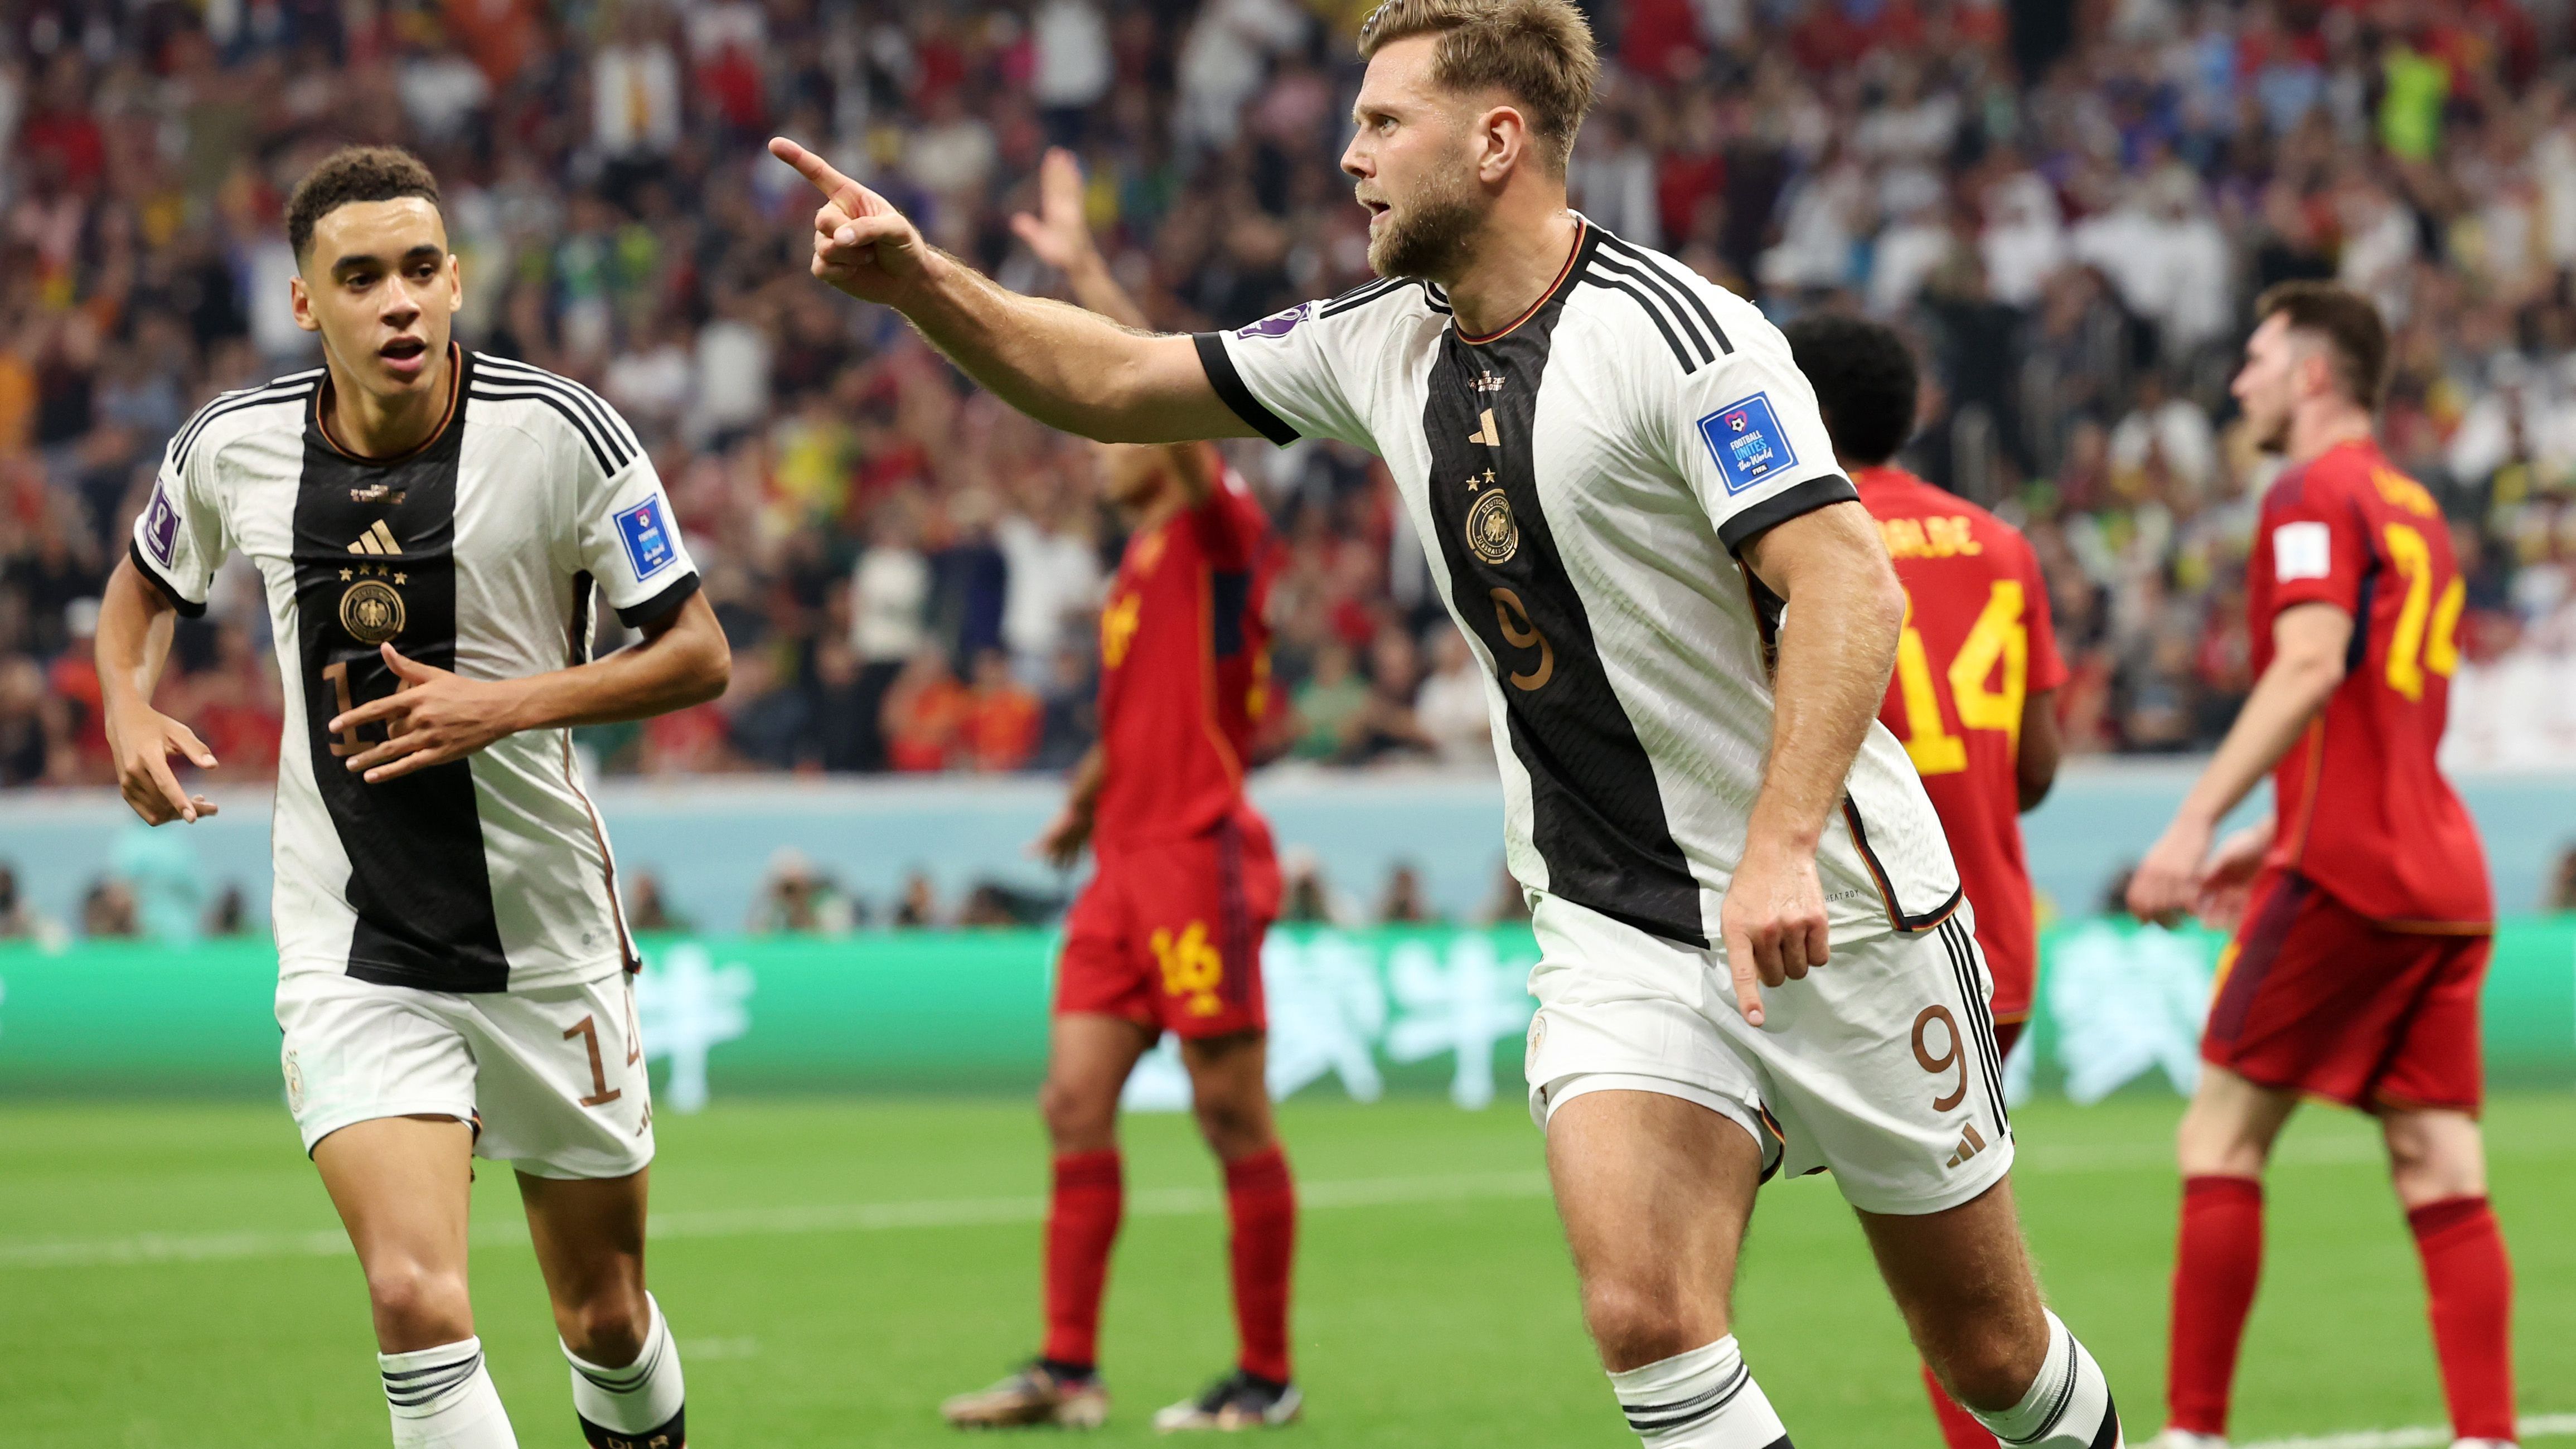 <strong>WM 2022, 2. Spieltag, Spanien - Deutschland 1:1</strong><br>Erst in der 83. Minute sorgte der eine knappe Viertelstunde zuvor eingewechselte Füllkrug für den Ausgleich und somit für das nächste Joker-Tor des Abends. Für einen zweiten Treffer hat es jedoch nicht gereicht. Somit ging die Mannschaft mit einem Punkt ins vorzeitige Endspiel gegen Costa Rica. Da reichte der 4:2-Erfolg nicht zum Weiterkommen.